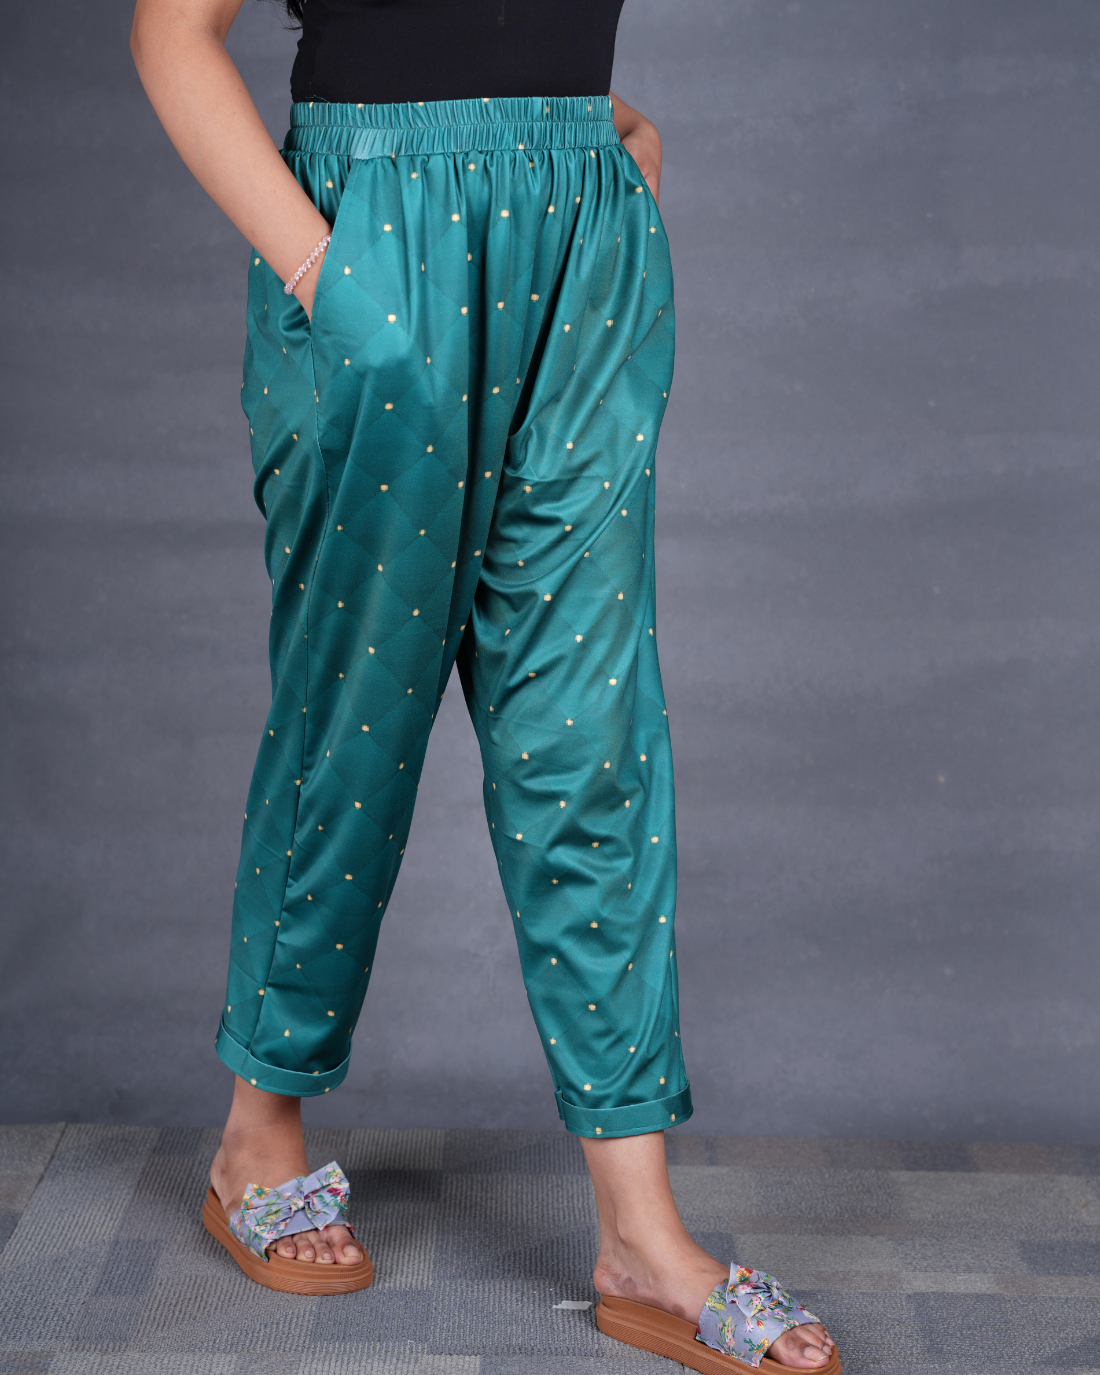 Luxiourious Women Printed Pyjamas (Buy 2 Get 400 OFF)